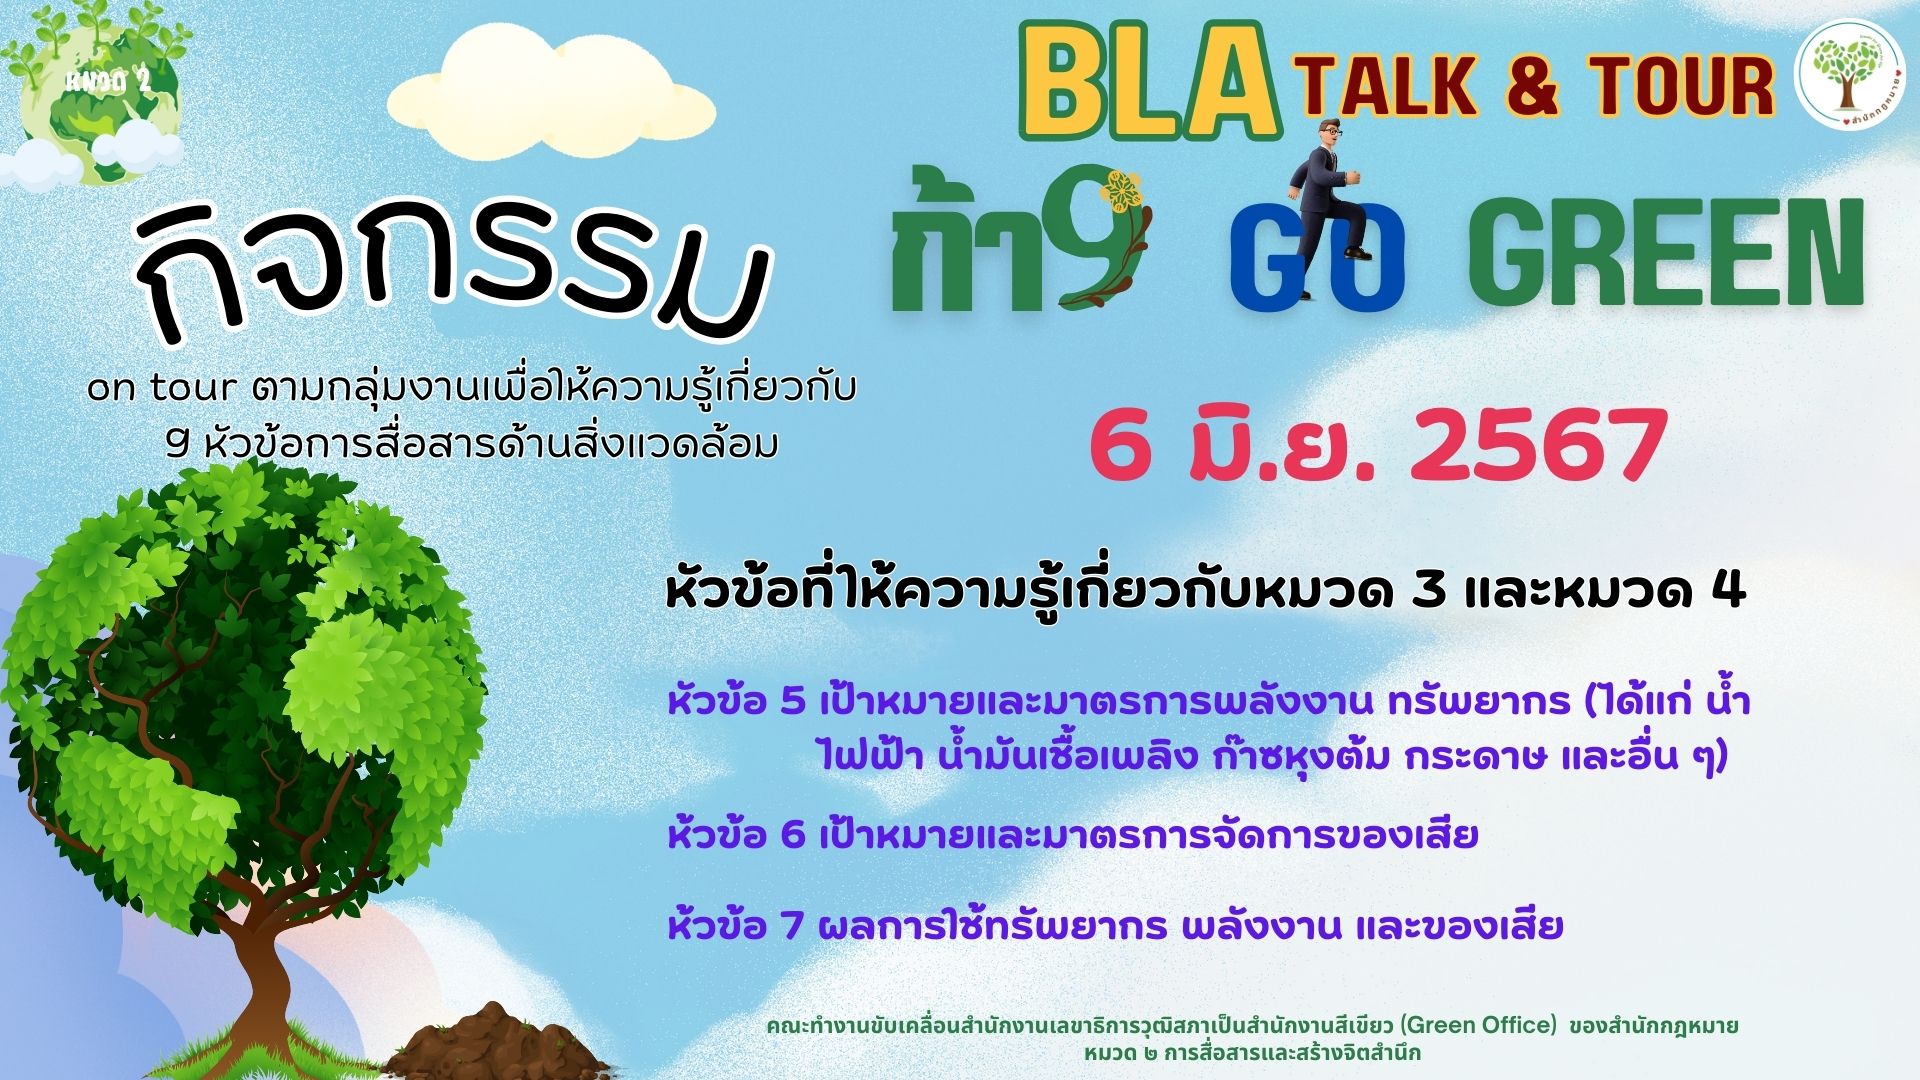 กิจกรรม BLA Talk & Tour ก้าว Go Green ครั้งที่ 2